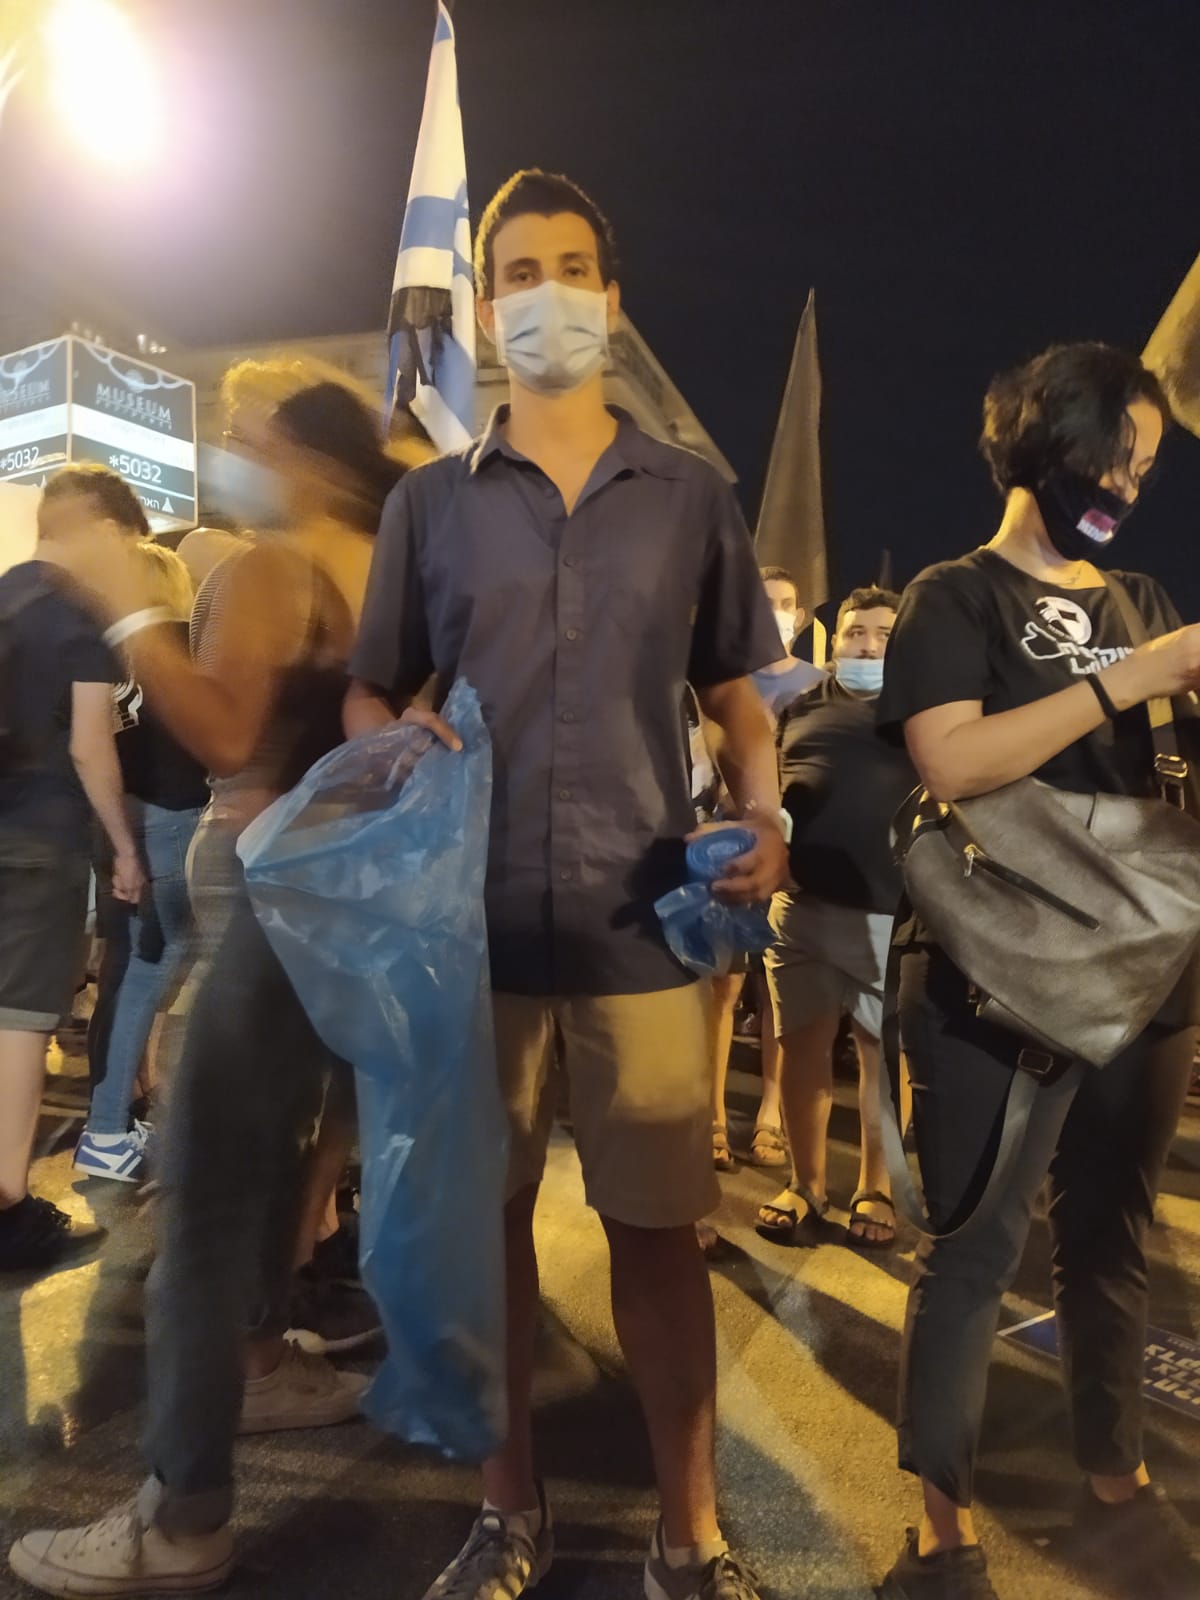 נעם (22) ממבשרת ציון, מנקה את אזור הפגנות המחאה מול מעון ראש הממשלה, 15 באוגוסט 2020 (צילום: יהל פרג')